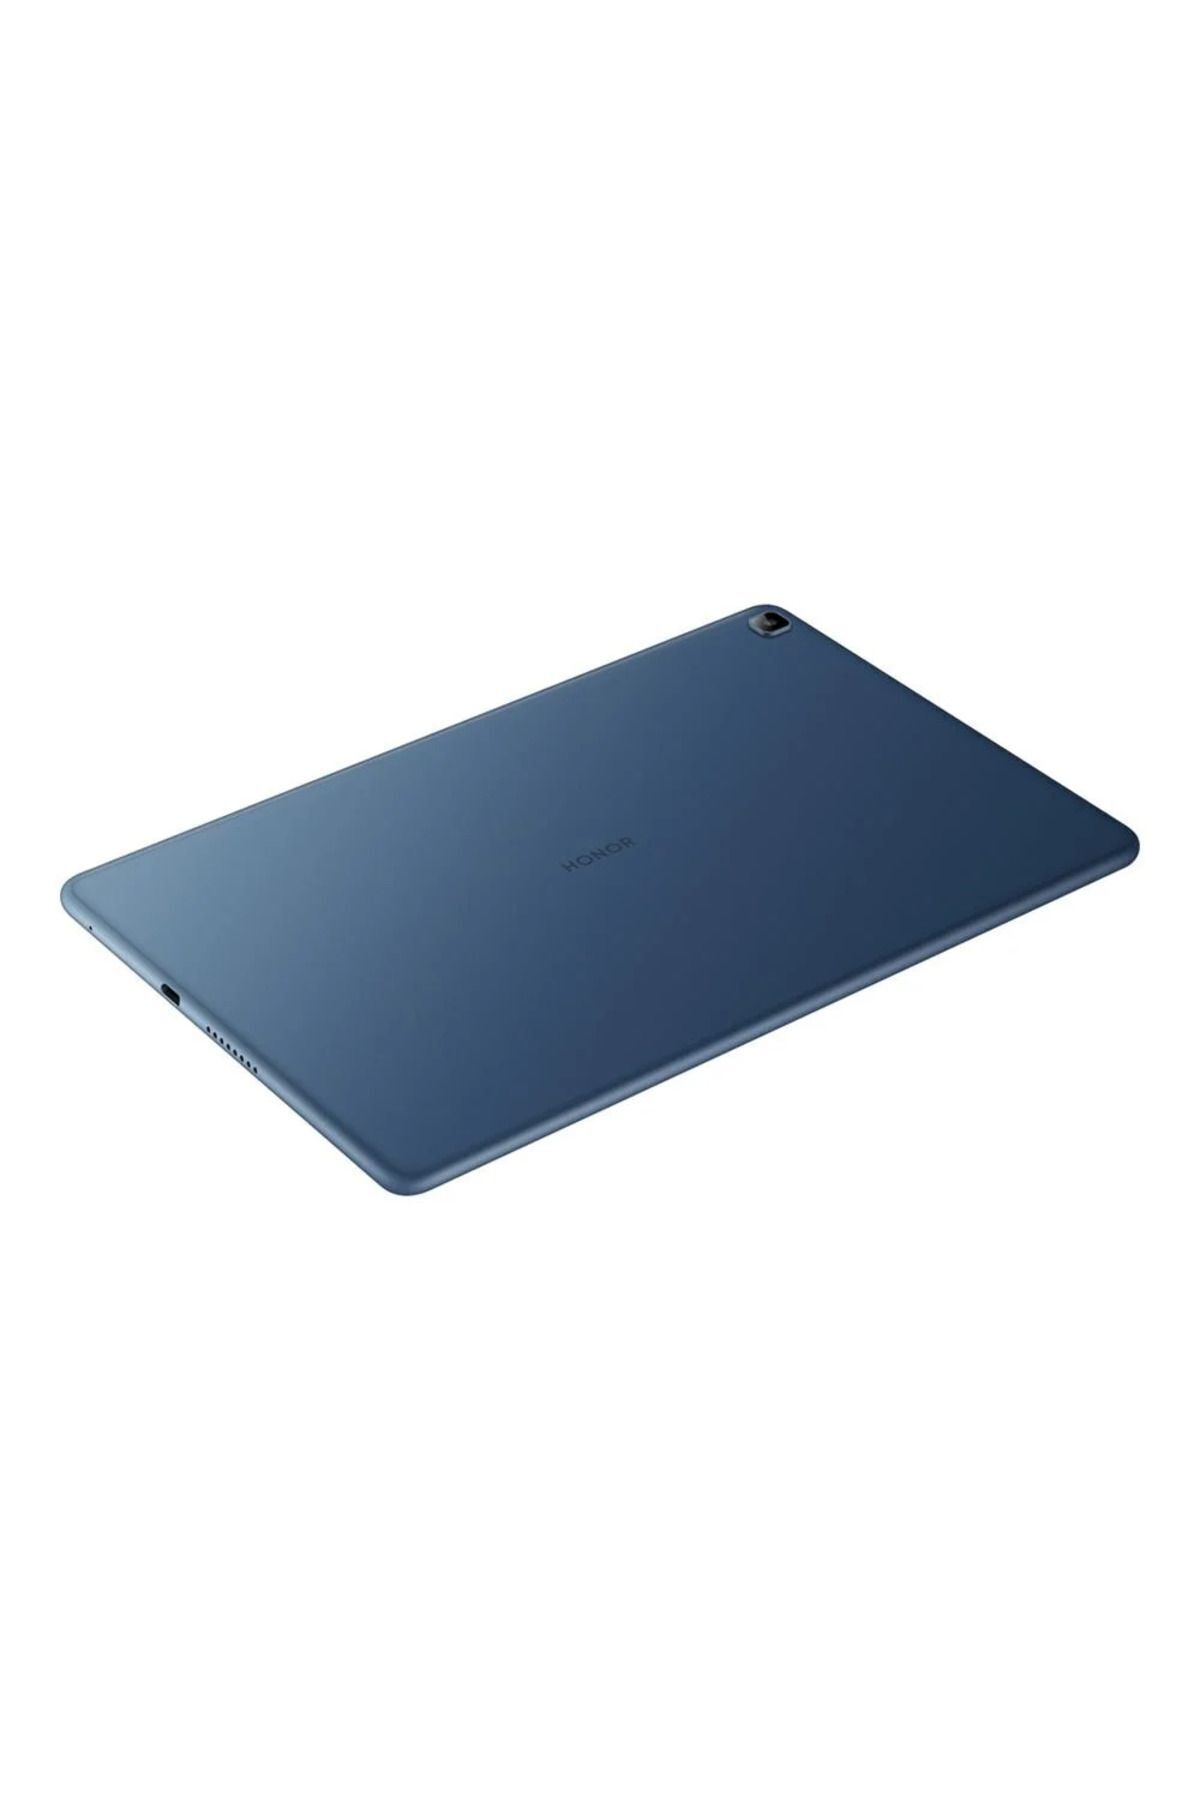 Honor Pad X8 4 GB 64 GB Wi-Fi 10.1" Tablet